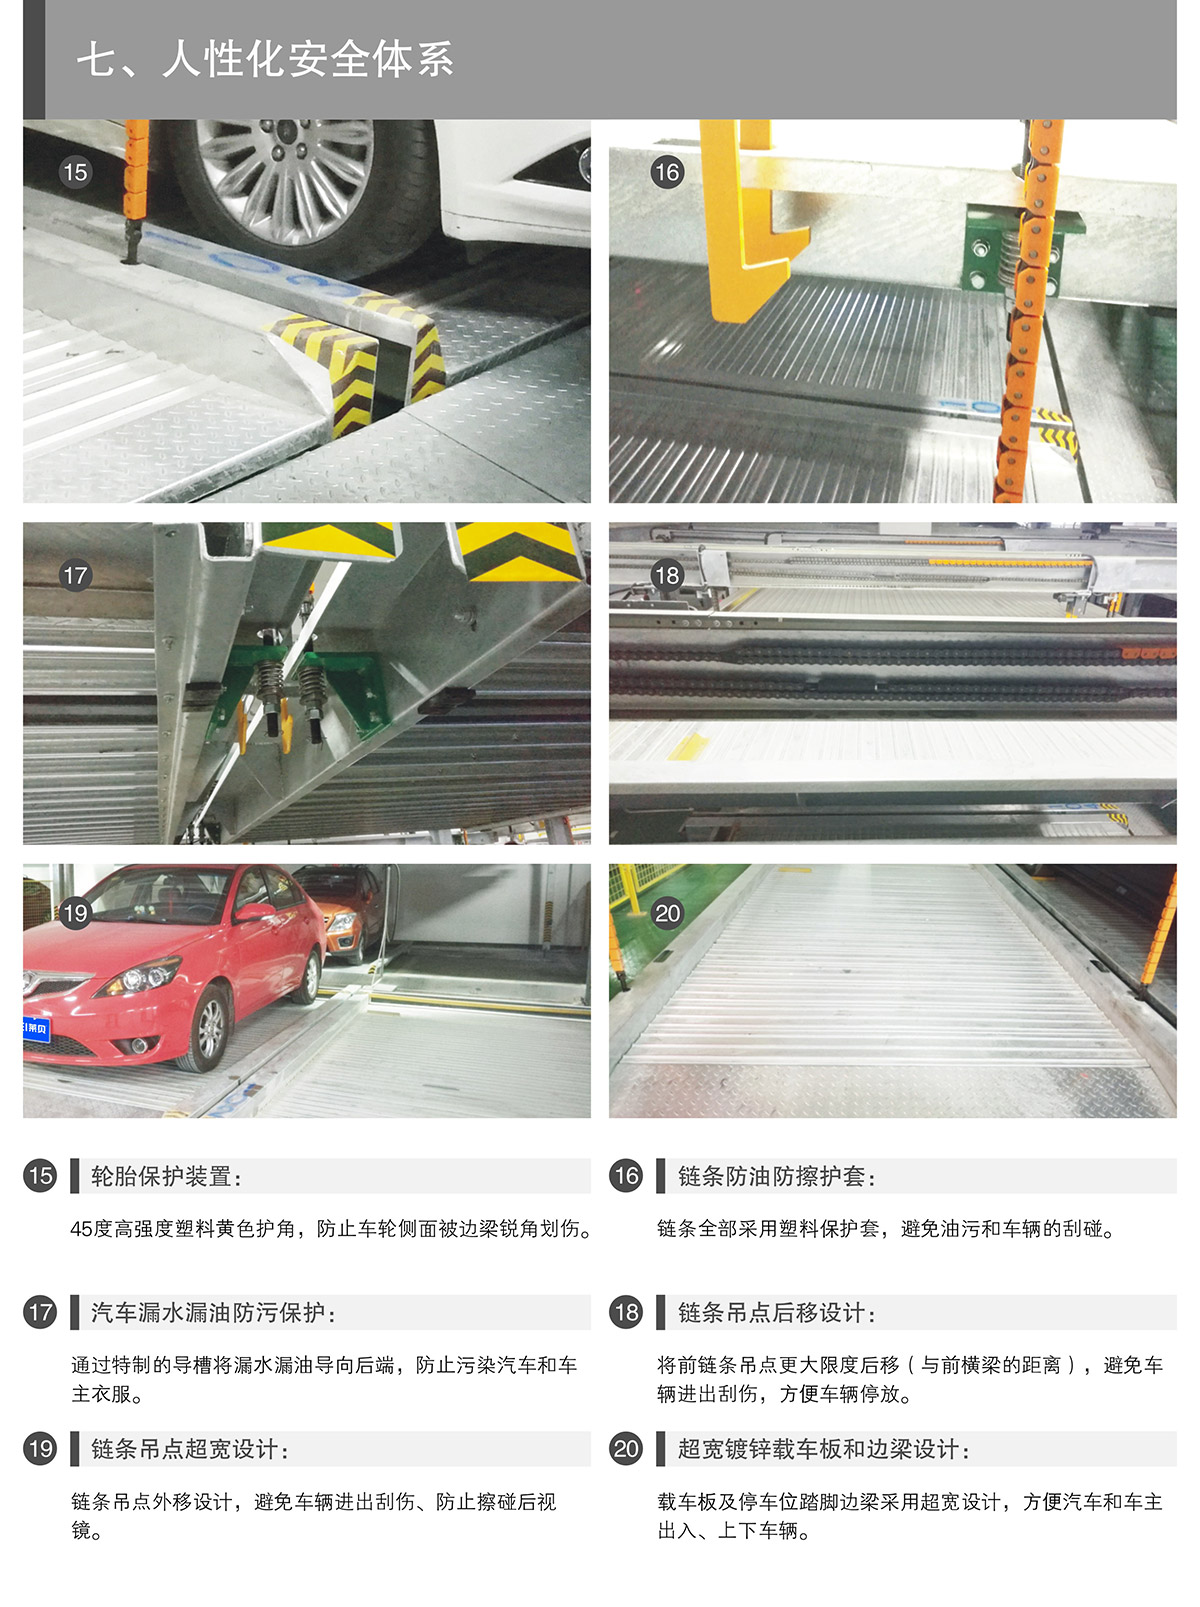 重庆PSH2-D1负一正一地坑二层升降横移类机械式立体停车设备人性化安全体系.jpg